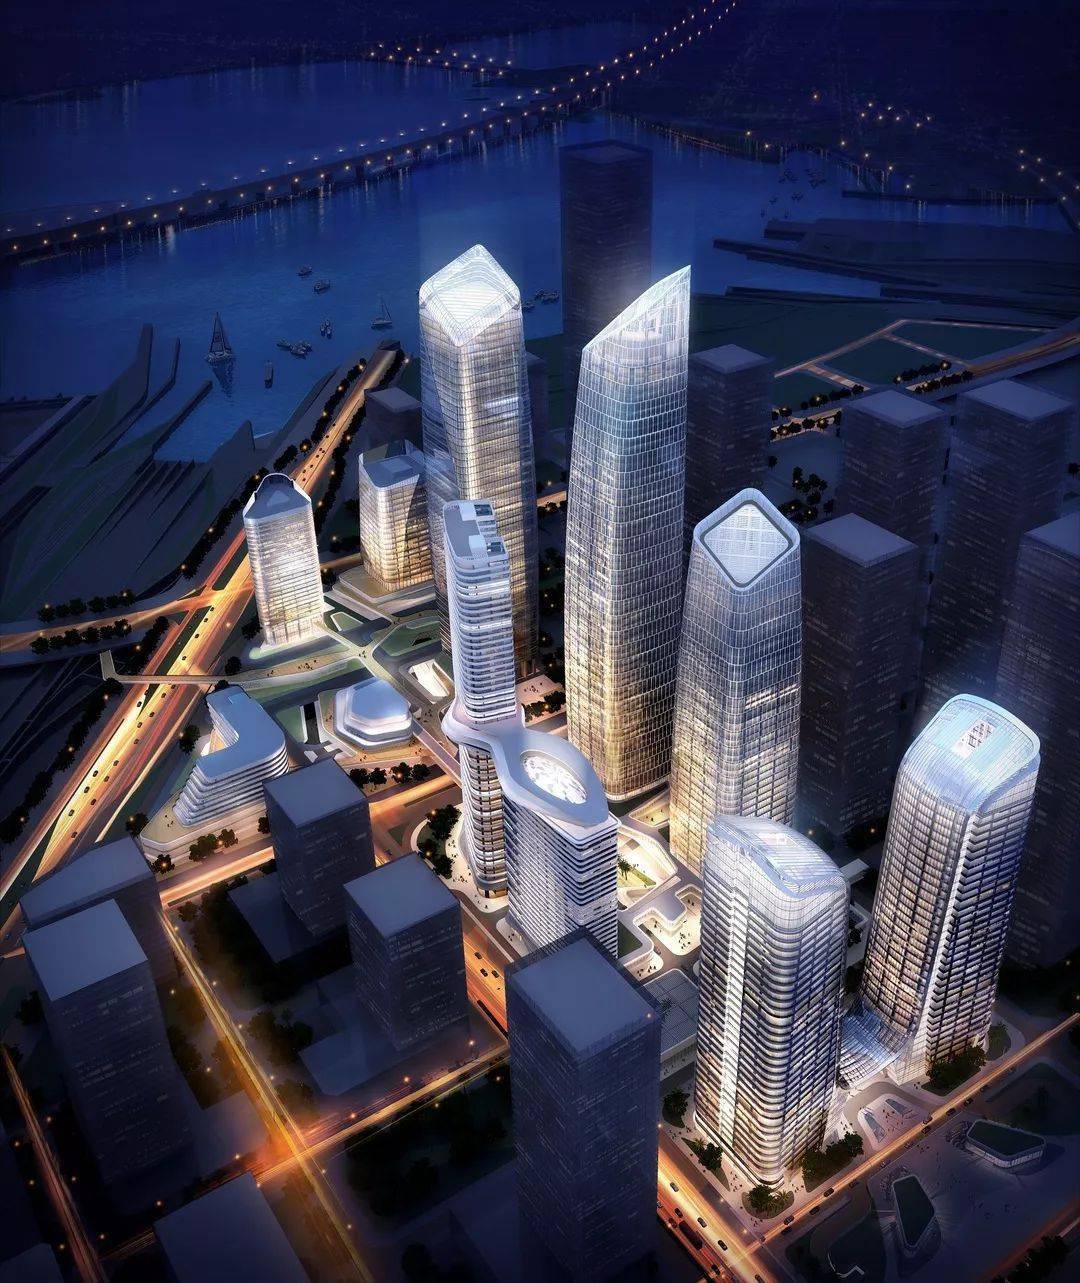 高388米深圳在建第一高楼城脉金融中心大厦封顶